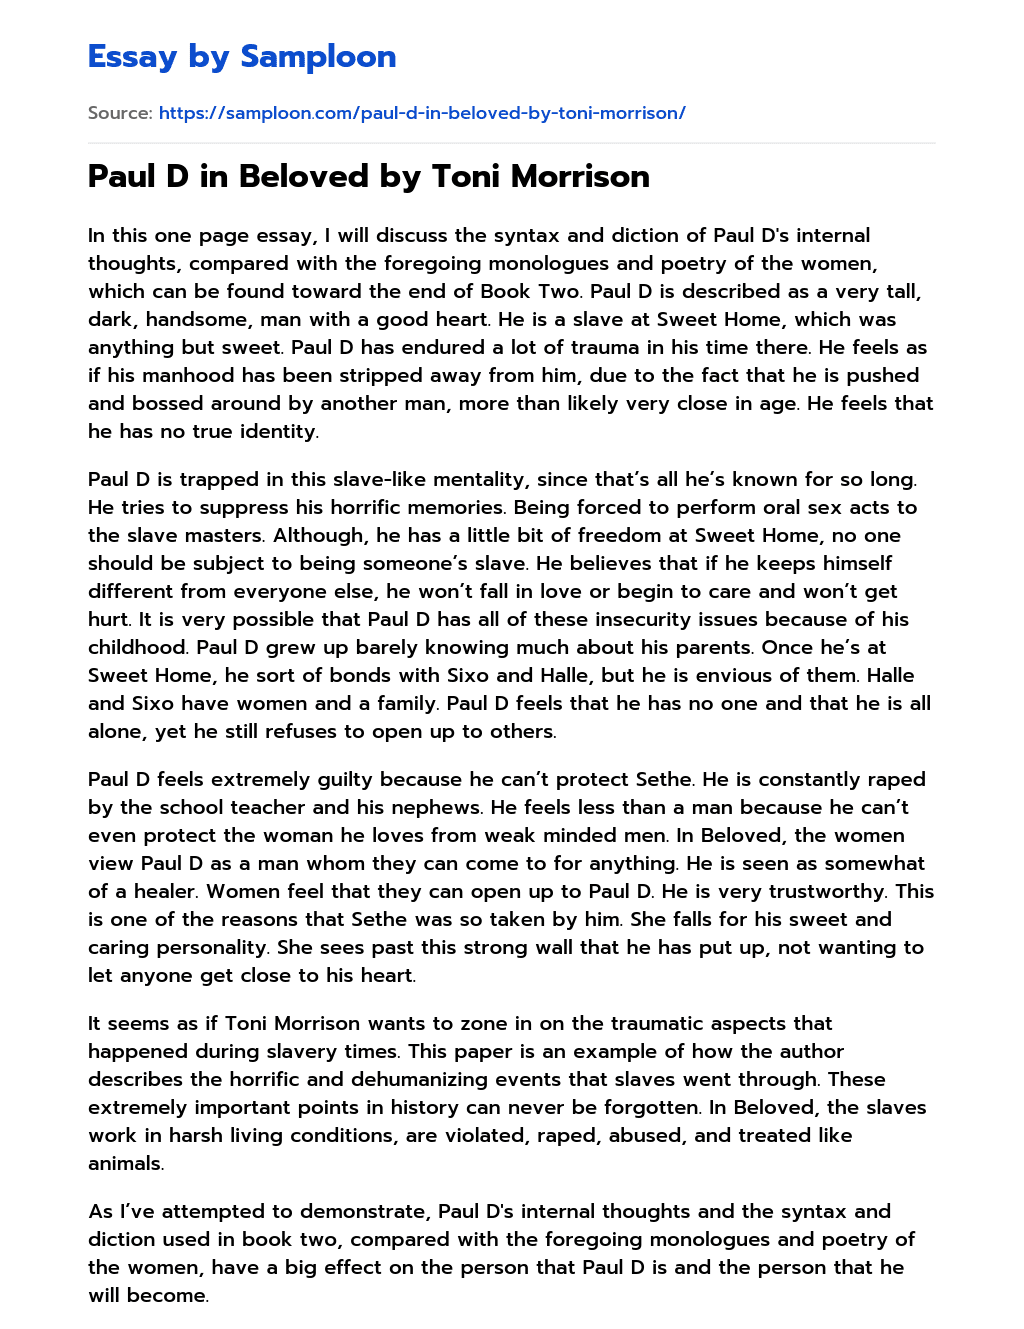 Paul D in Beloved by Toni Morrison essay